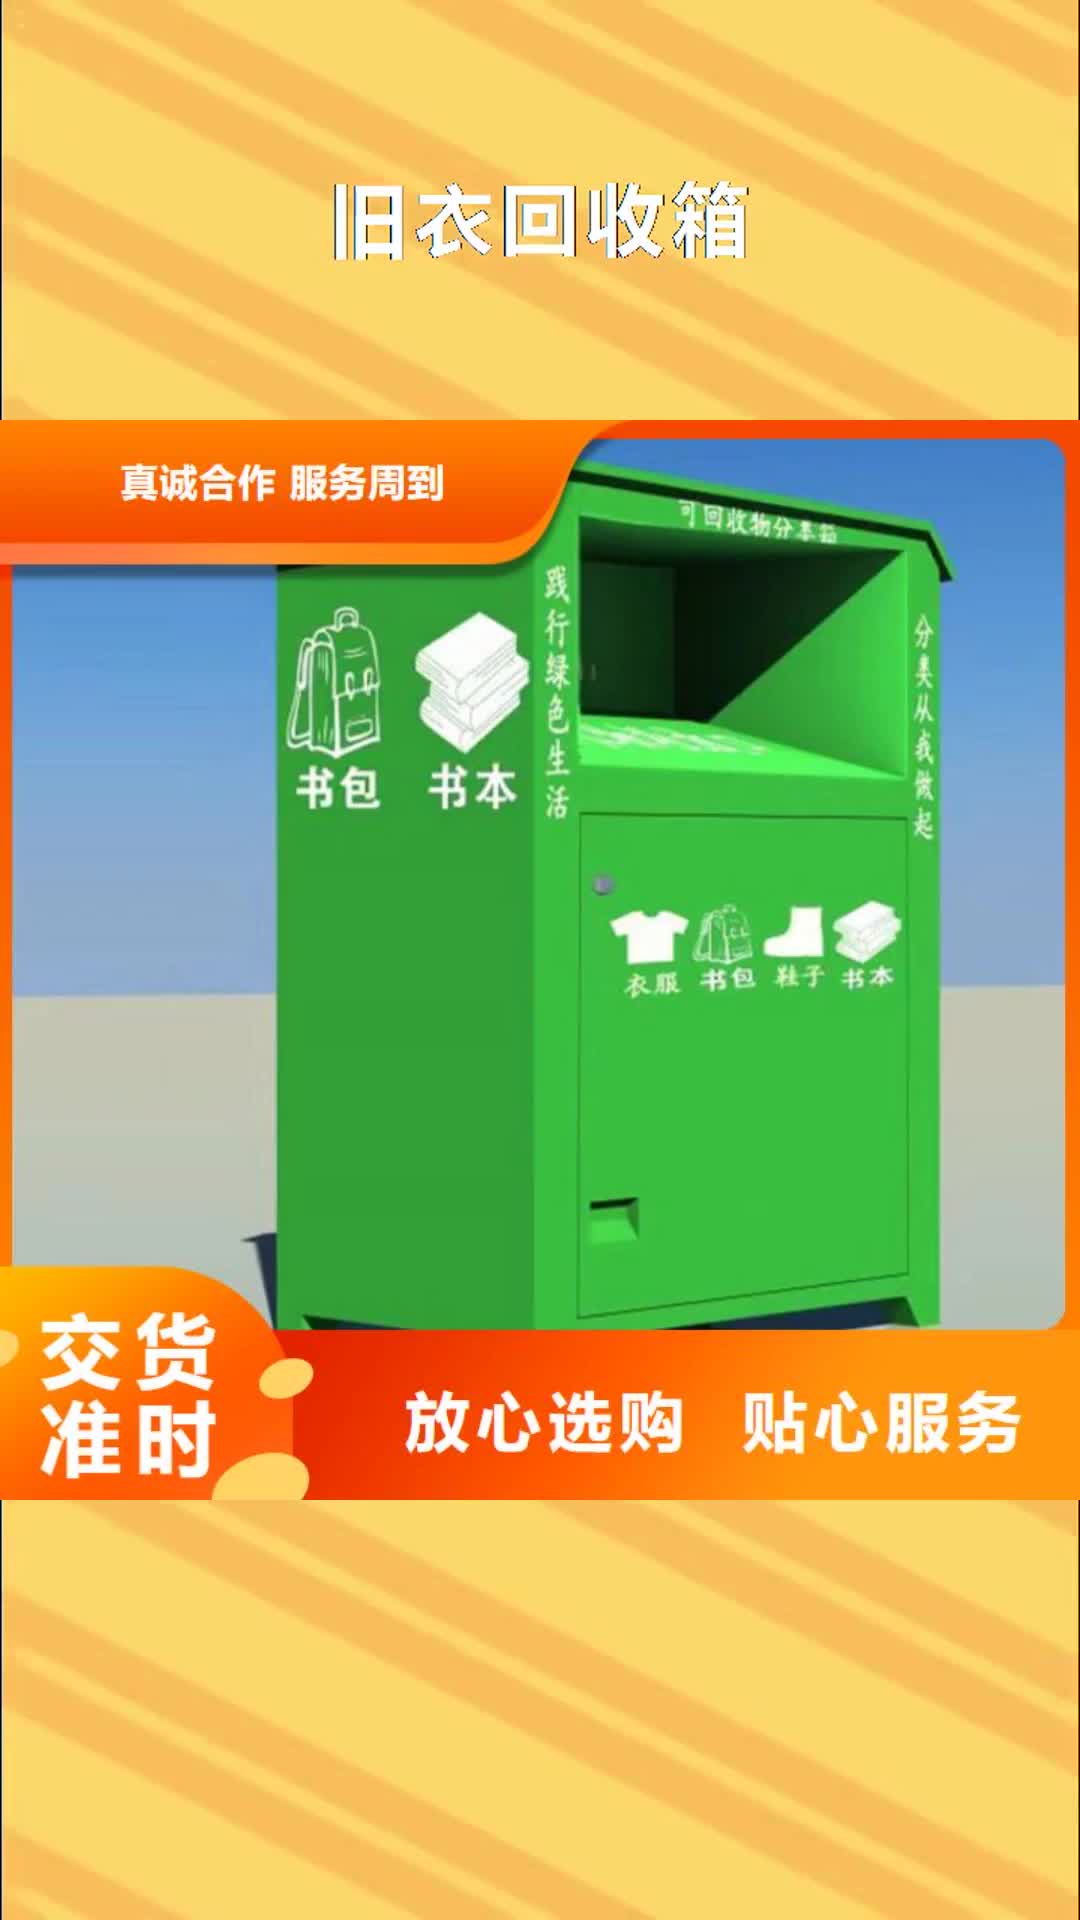 牡丹江【旧衣回收箱】 候车亭一致好评产品